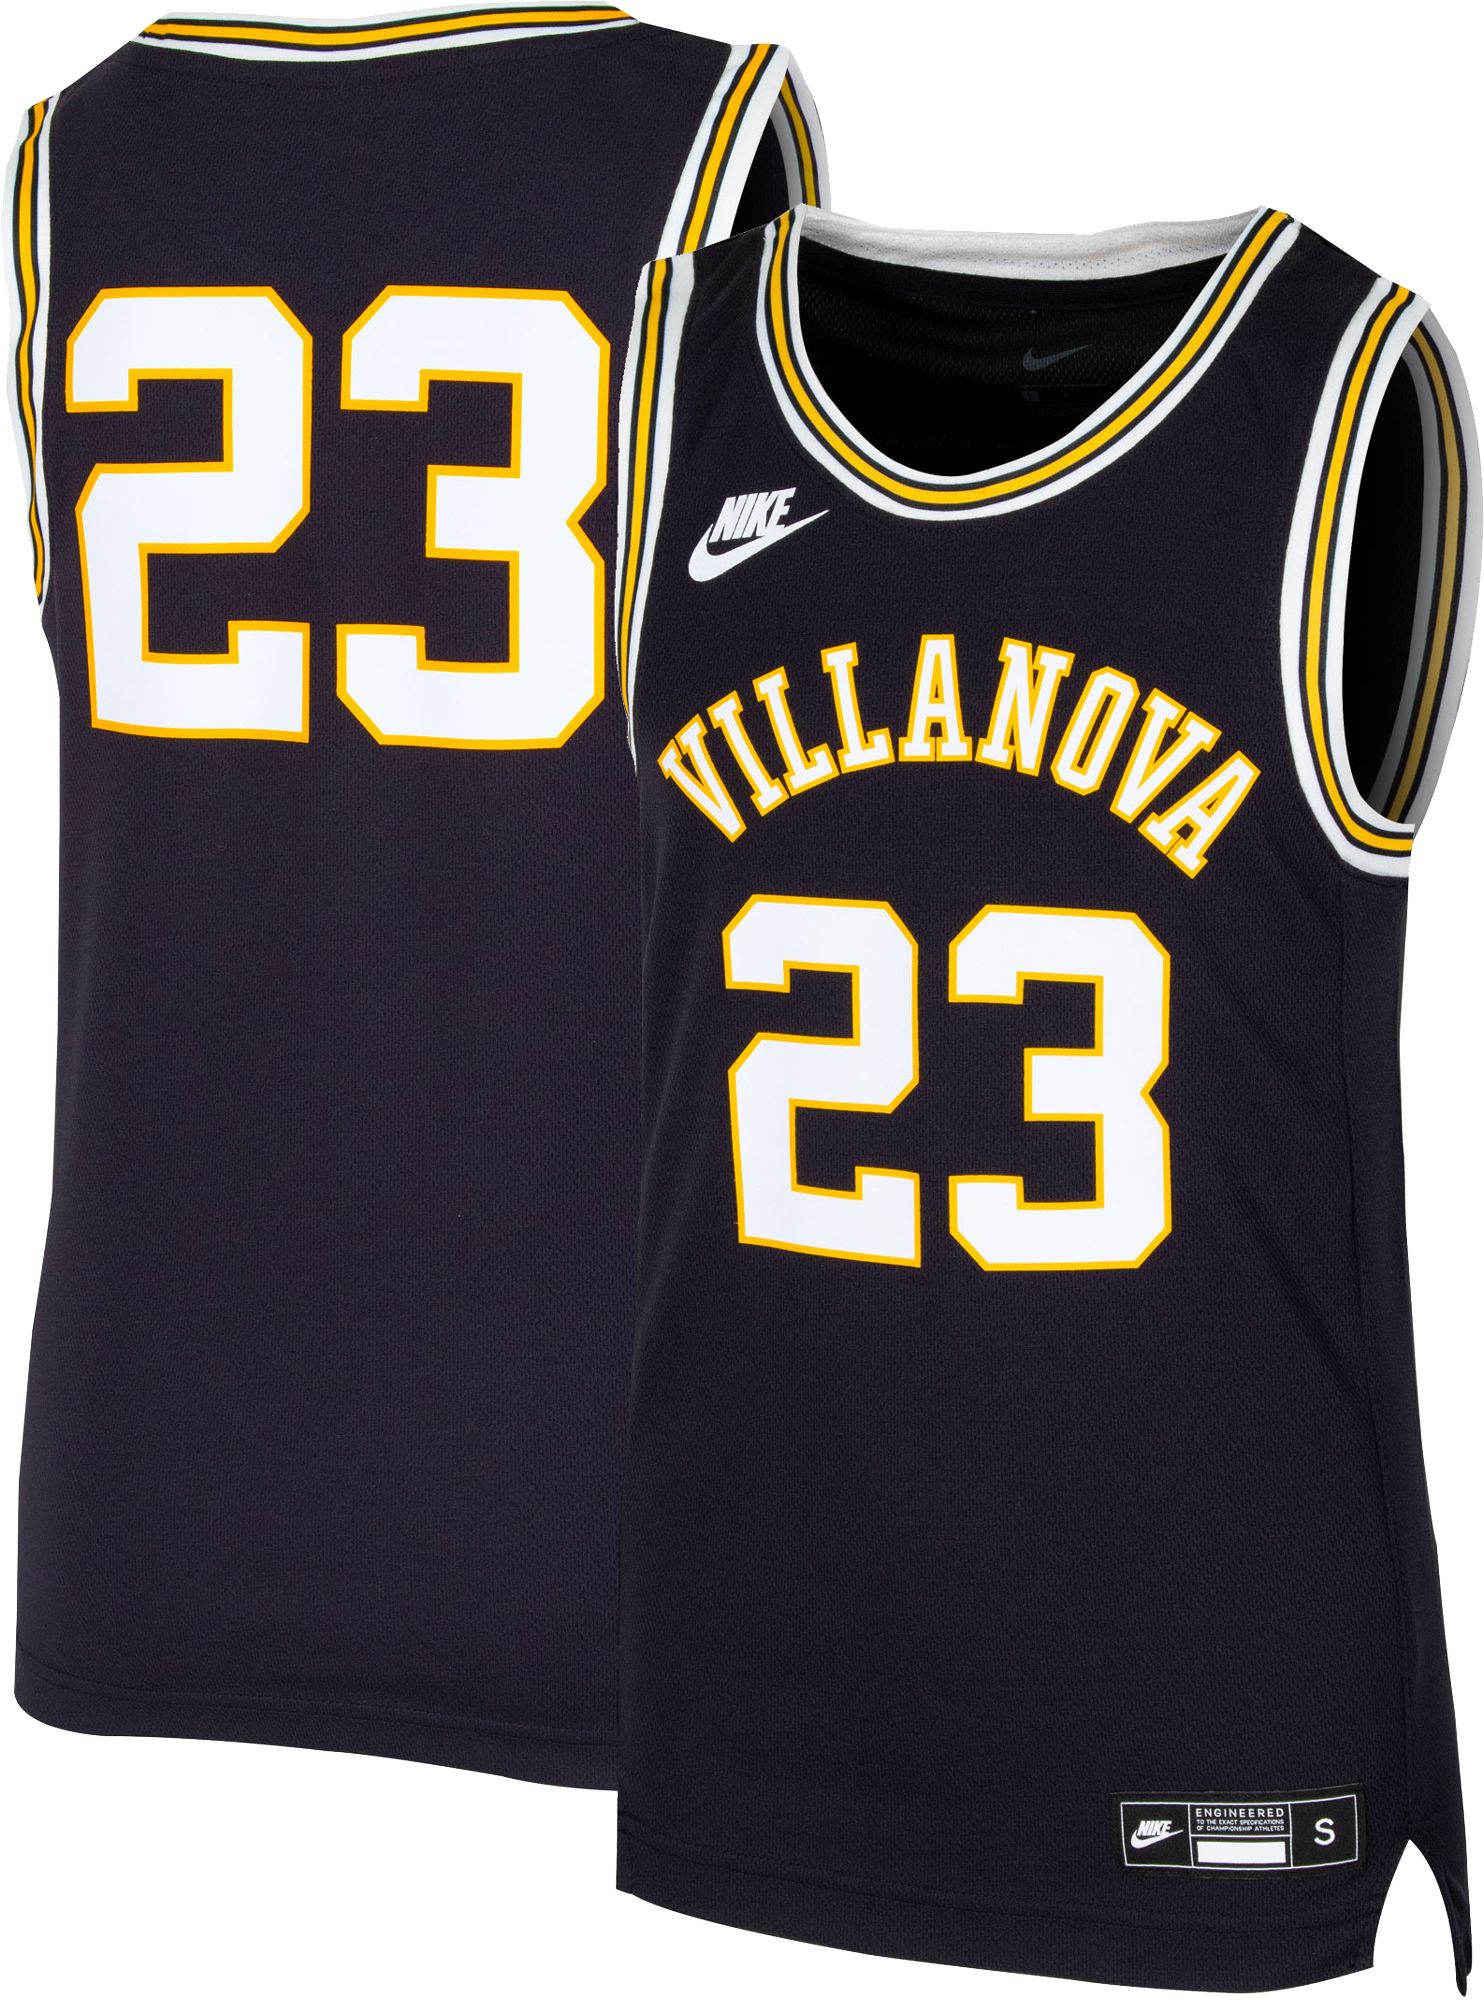 Nike Youth Villanova Wildcats Navy #23 